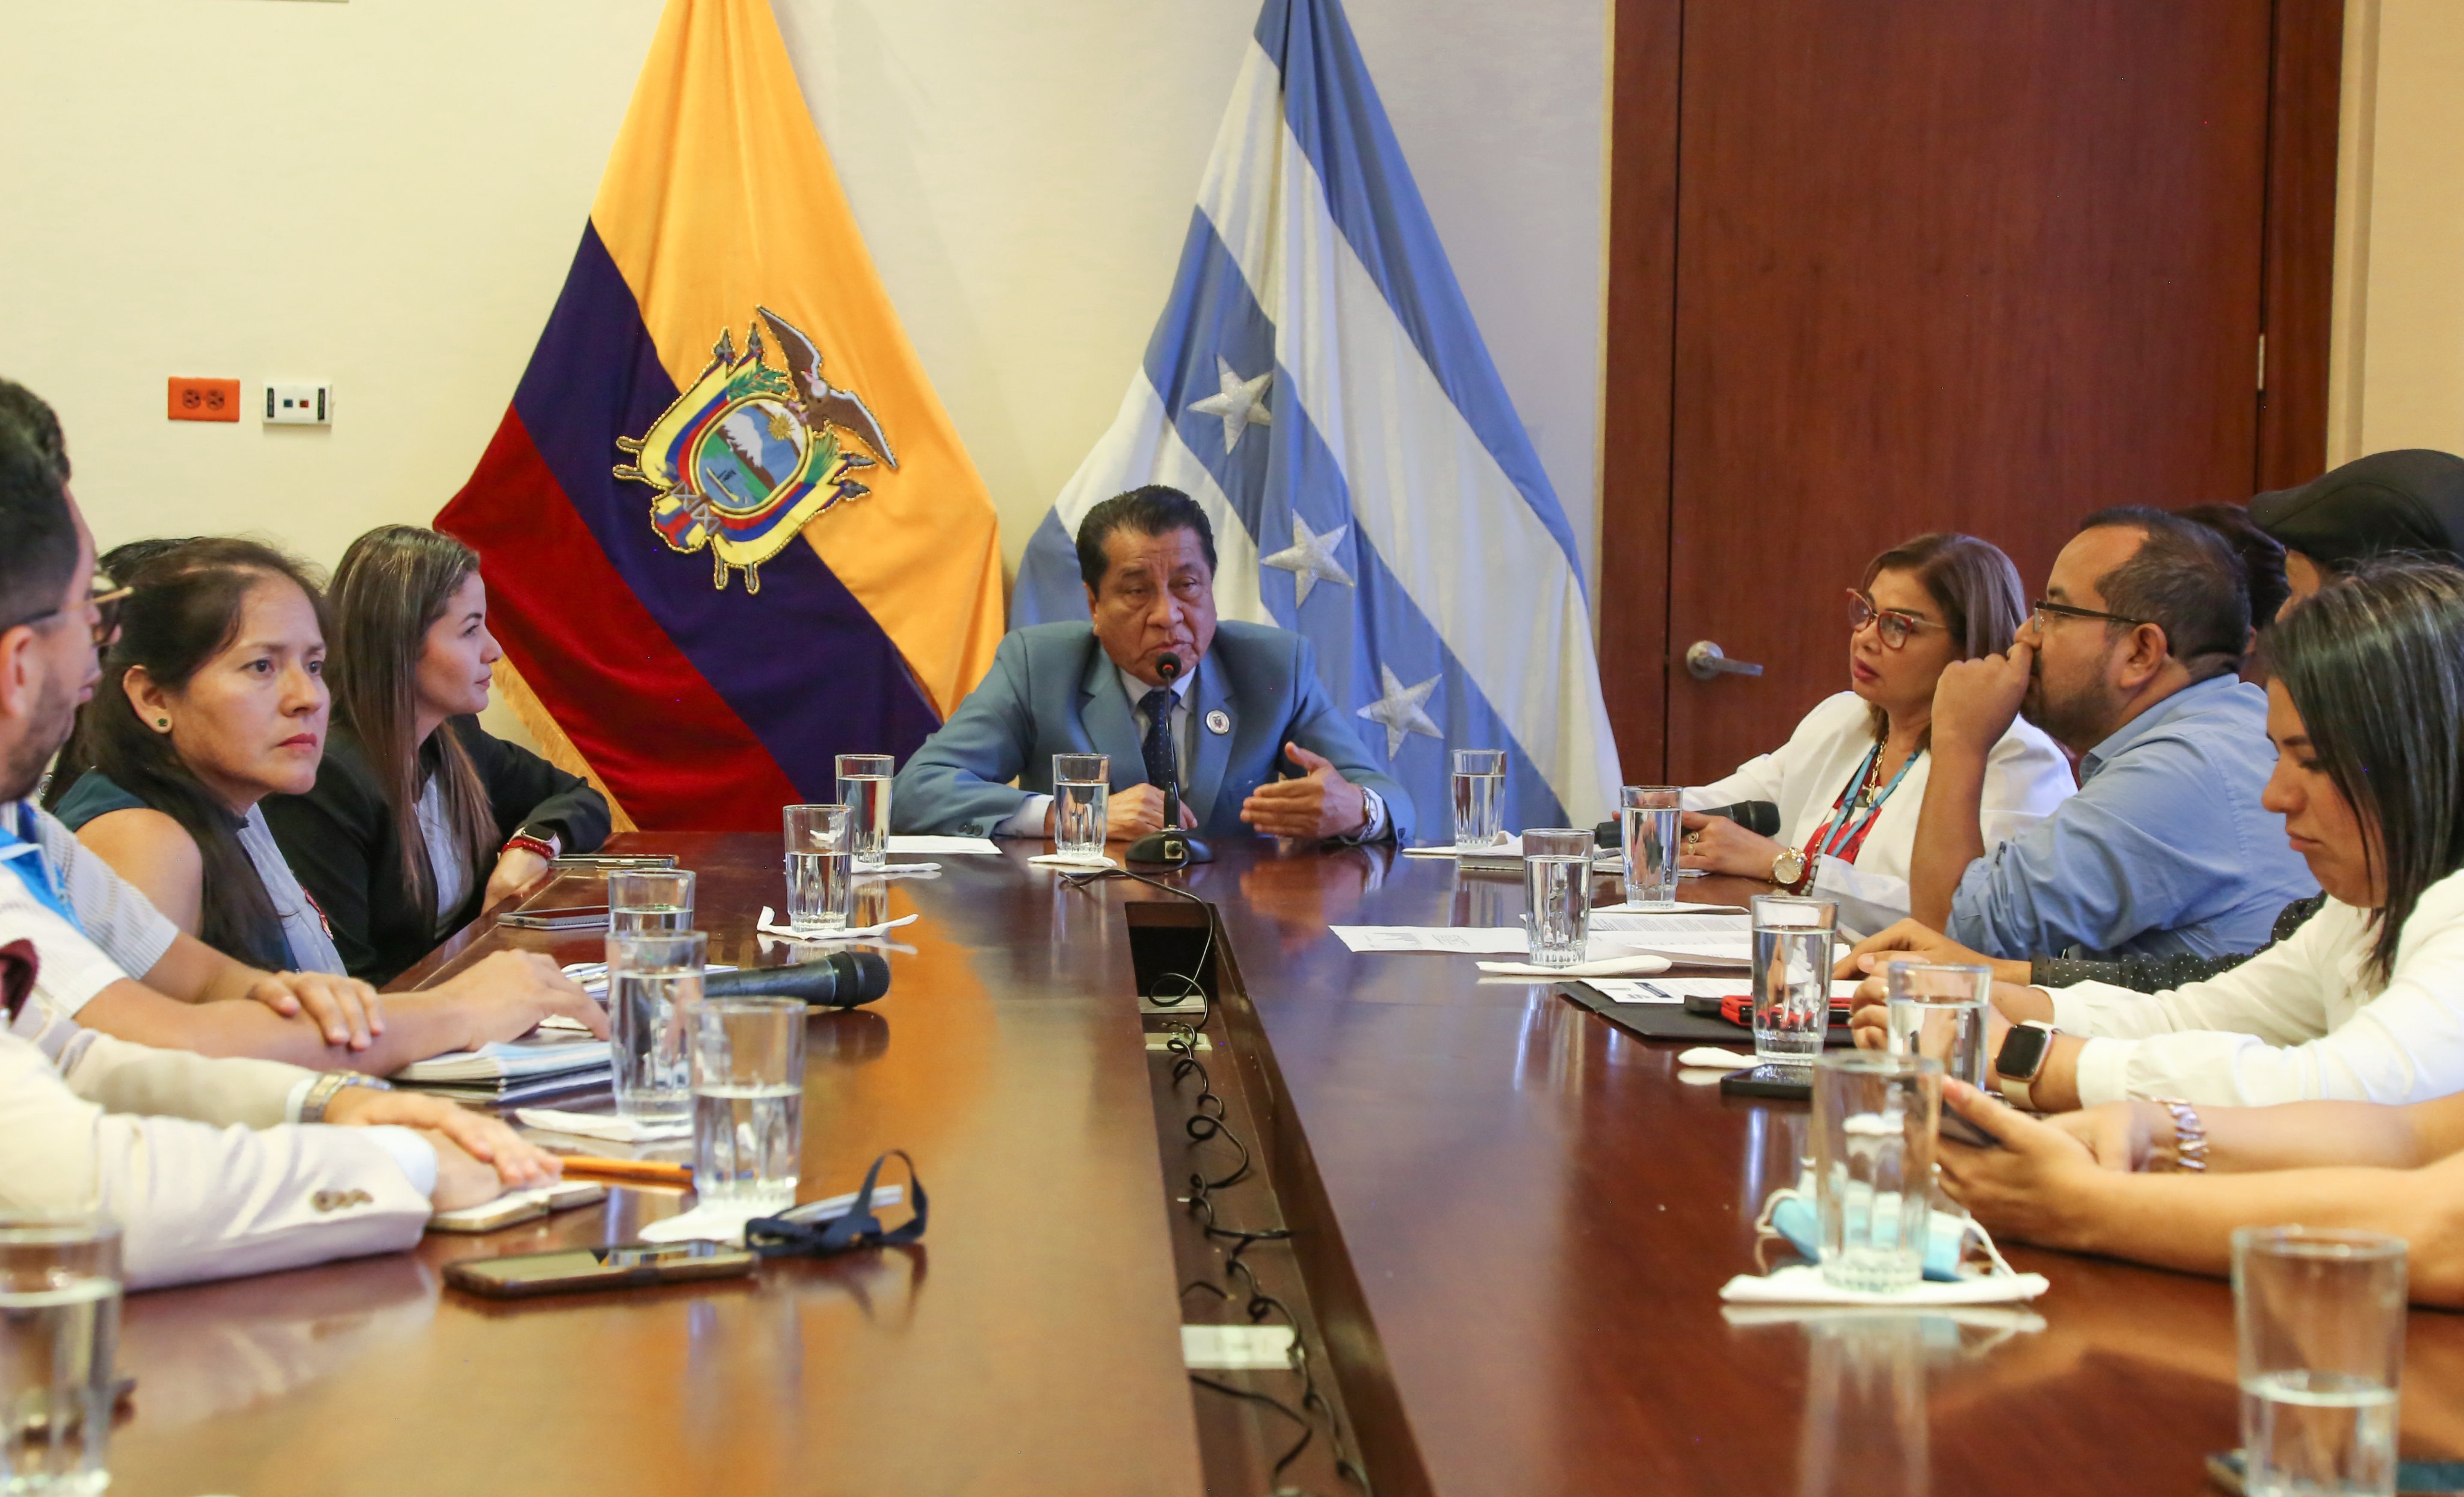 Las autoridades de al menos tres dependencias gubernamentales y estatales realizaron una reunión para tomar acciones frente al "reto clonazepam", difundido en redes sociales, que ya ha afectado a varios niños y adolescentes en Ecuador.